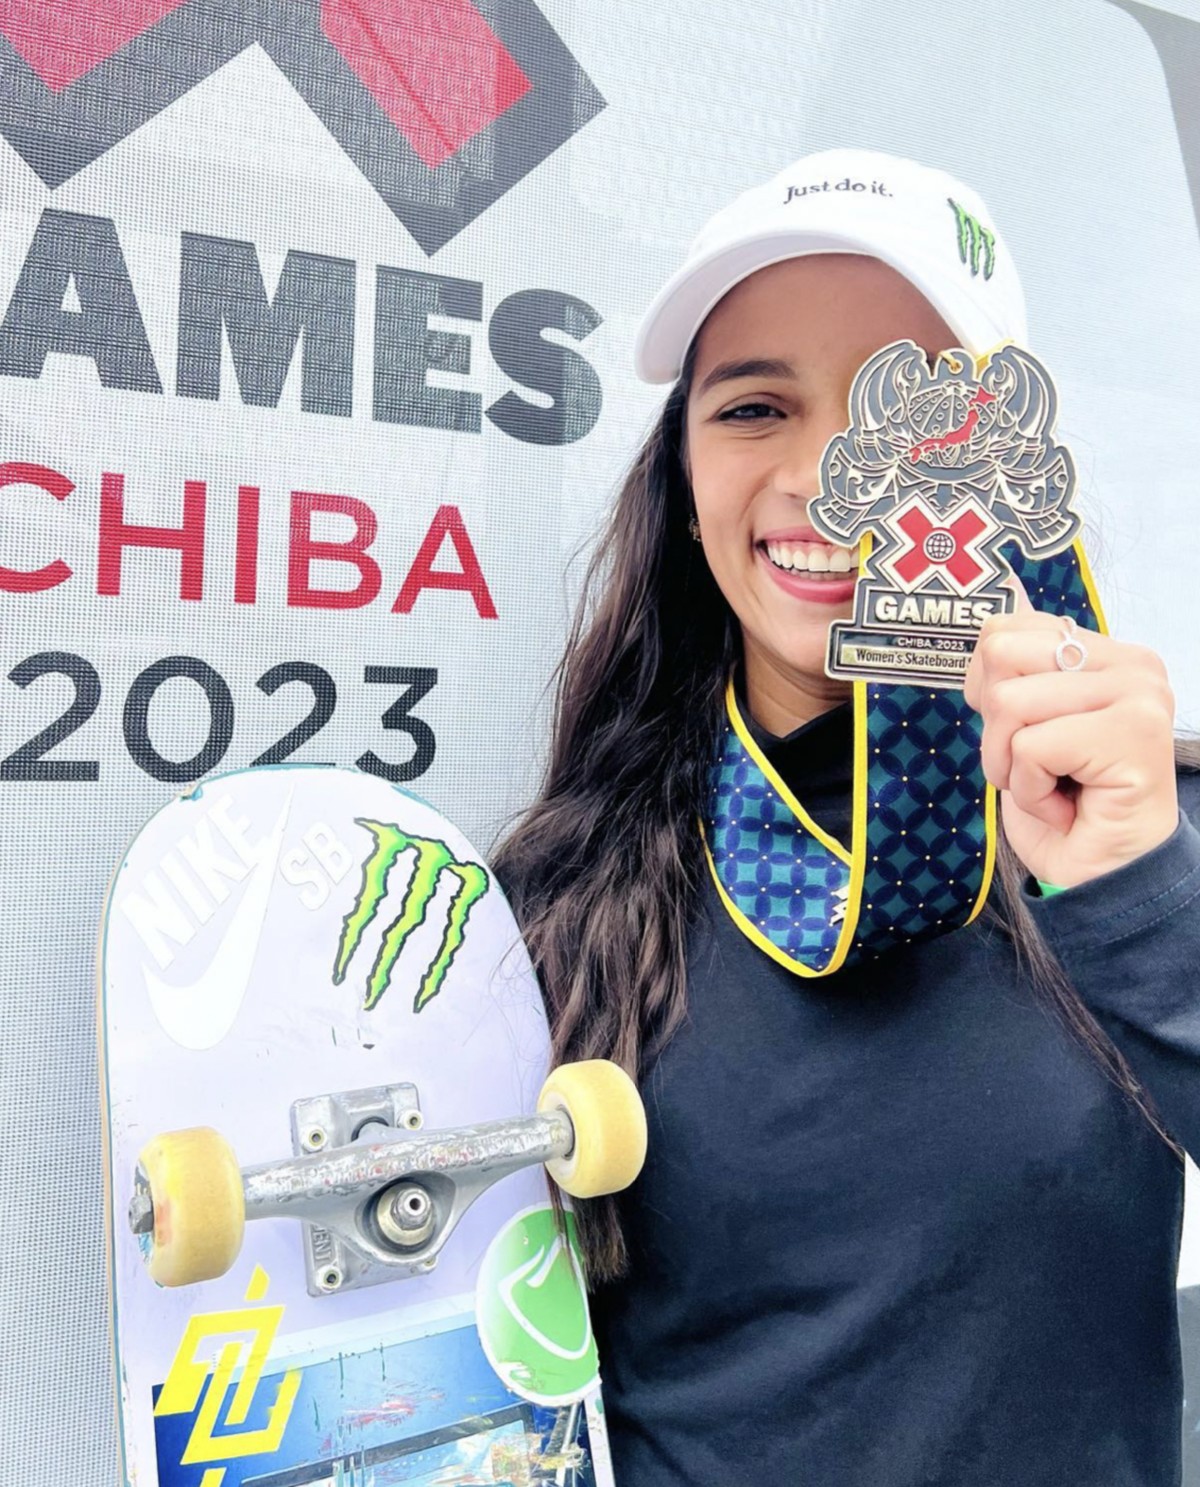 Rayssa Leal conquista segundo ouro no skate street do X-Games